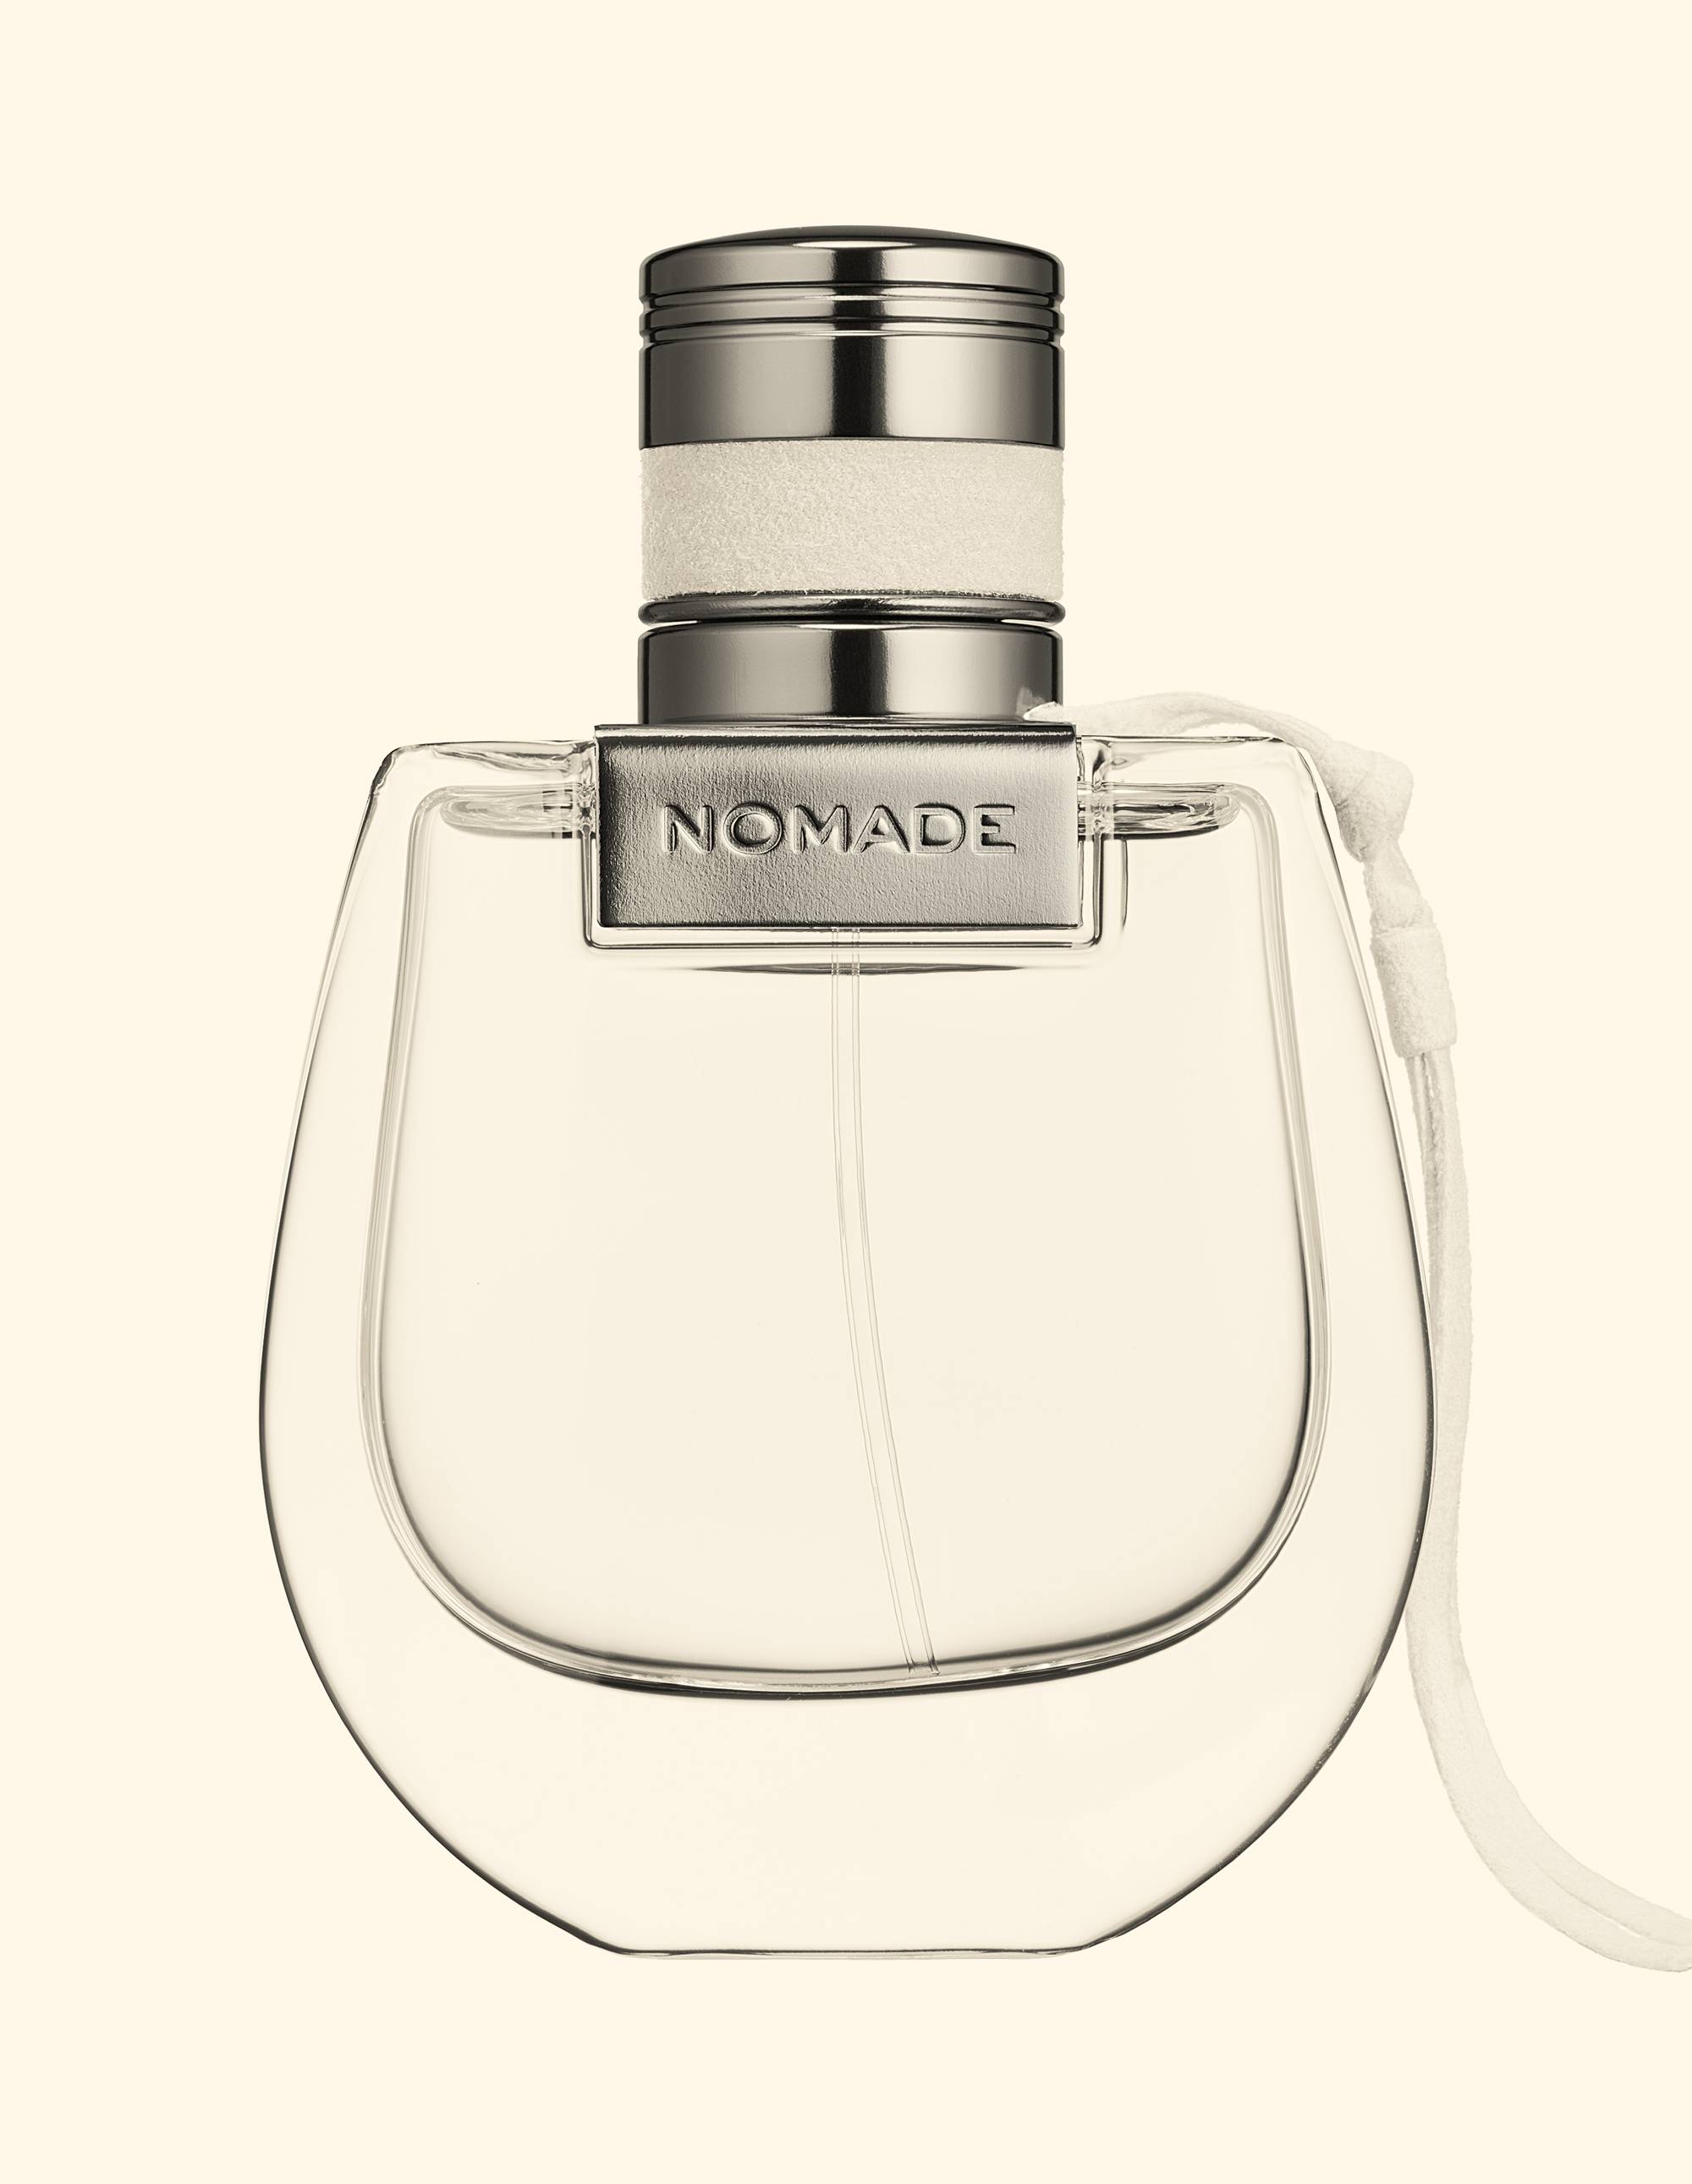 "Sensualité ”, les nouveaux parfums de peau au fond musqué photographiés par Antoine Picard 